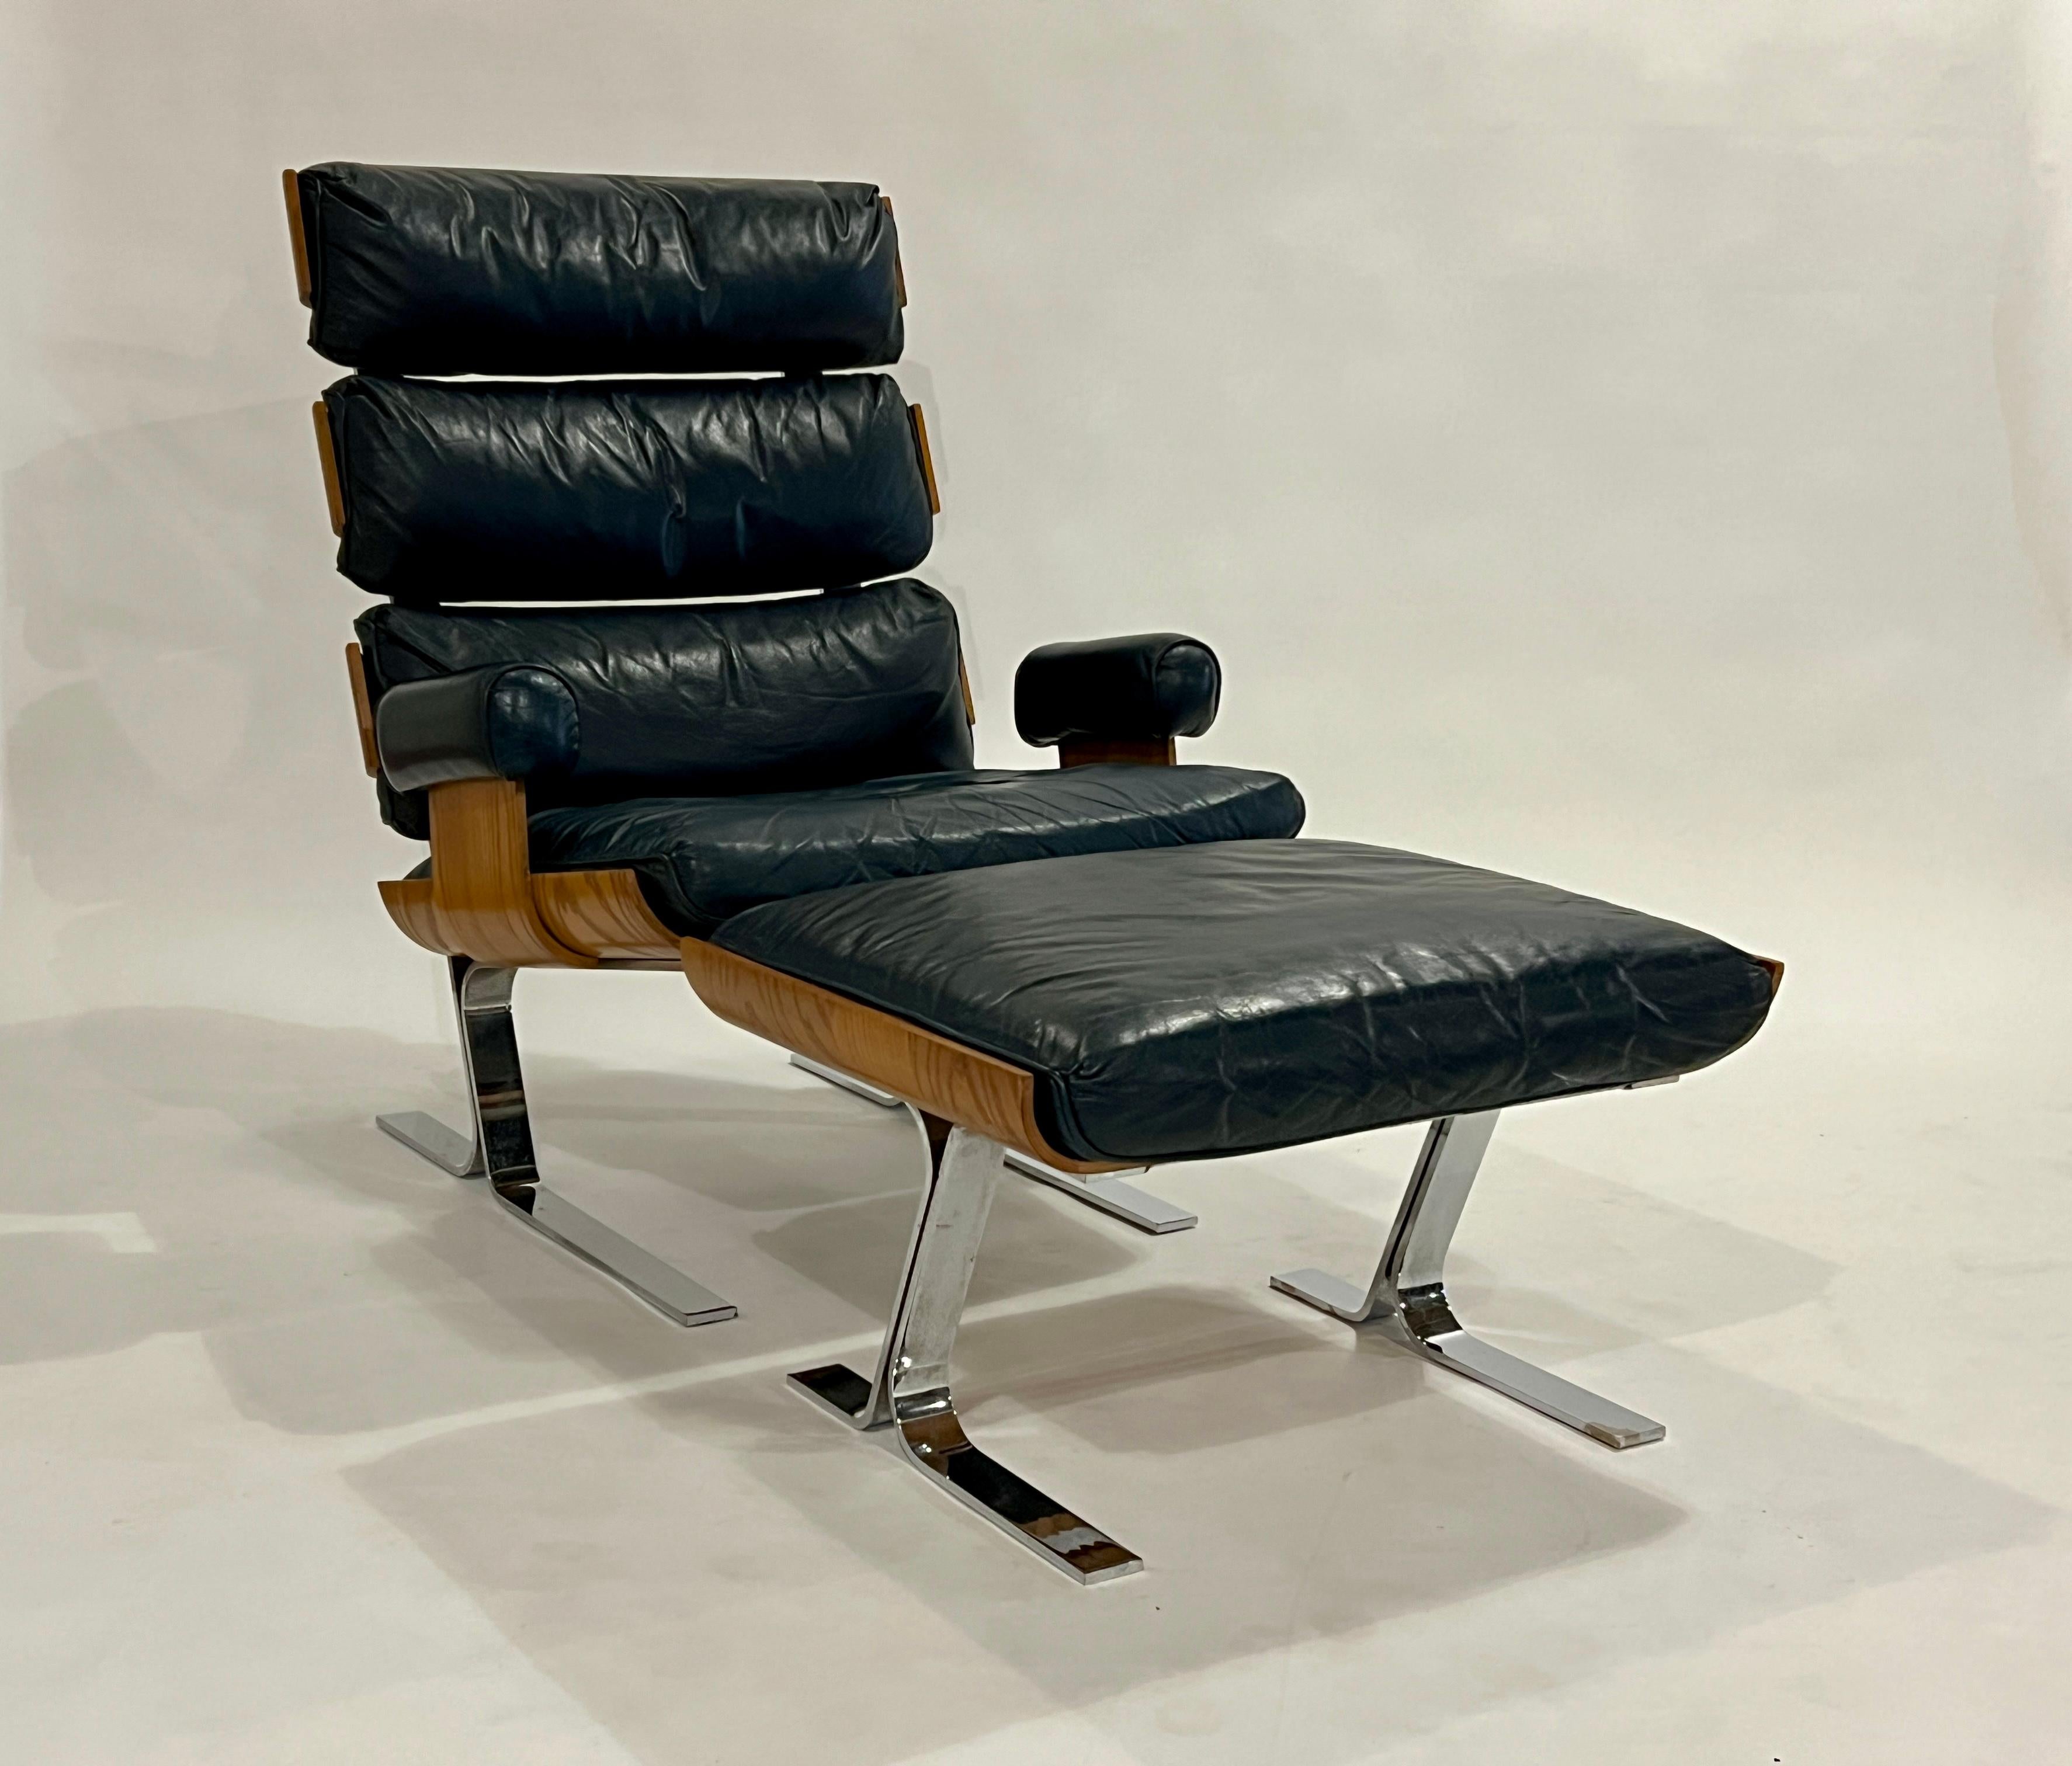 Chaise et ottoman très rares et non identifiés dans le style de la chaise Eames de Herman Miller et de la chaise et ottoman de la Collectional de Richard Hersberger. Fabriquée en contreplaqué, comme la chaise Eames, chaque bande de contreplaqué